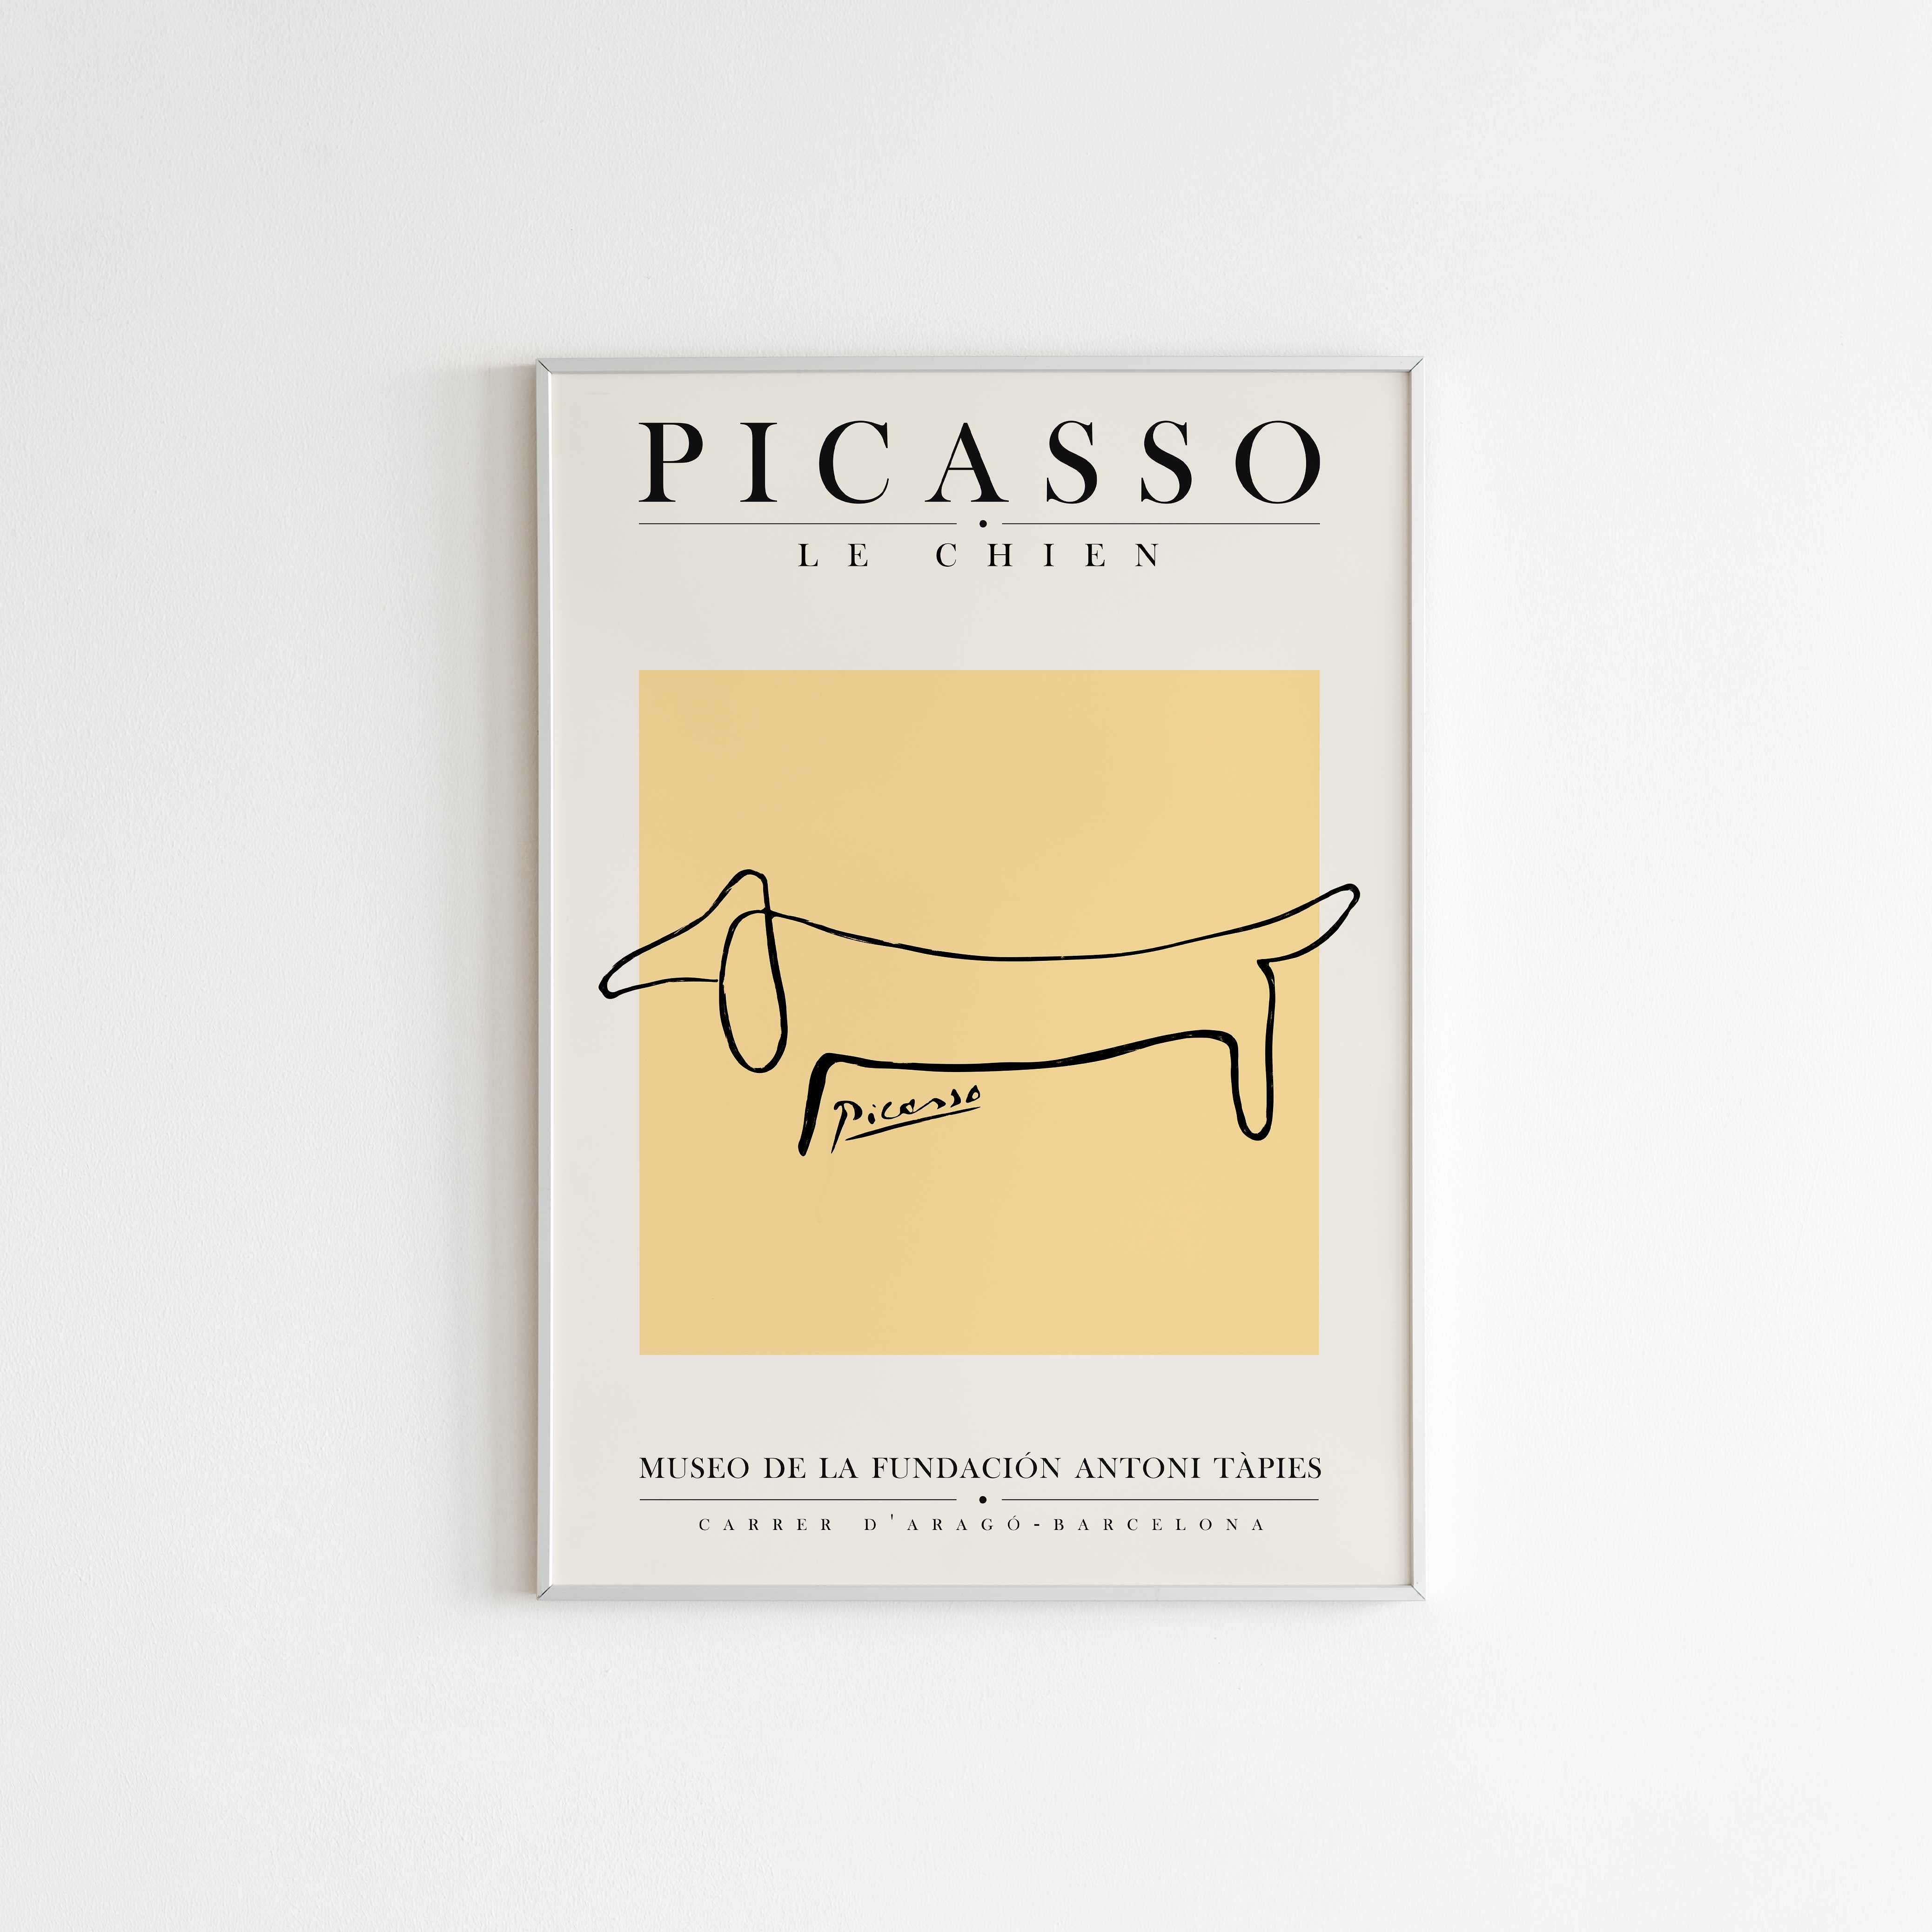 Matisse Plakat | "Picasso Le Chien" Poster  | Køb Online fra Ellensshop.dk